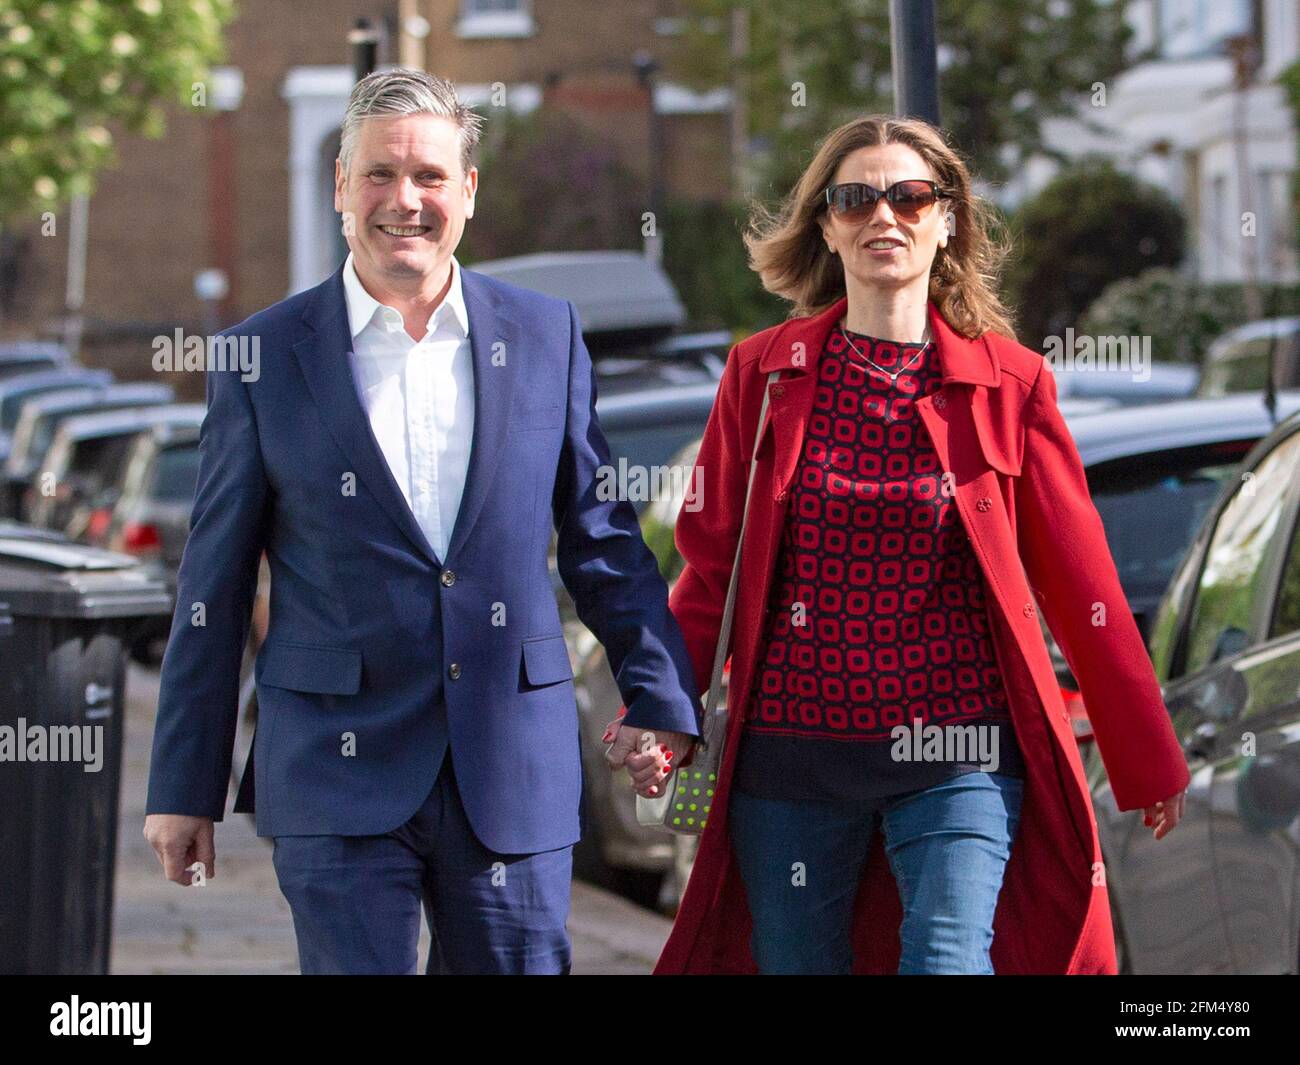 Le chef du travail Sir Keir Starmer et sa femme Victoria quittent leur bureau de scrutin local le 6 mai 2021, dans le nord de Londres, au Royaume-Uni Banque D'Images